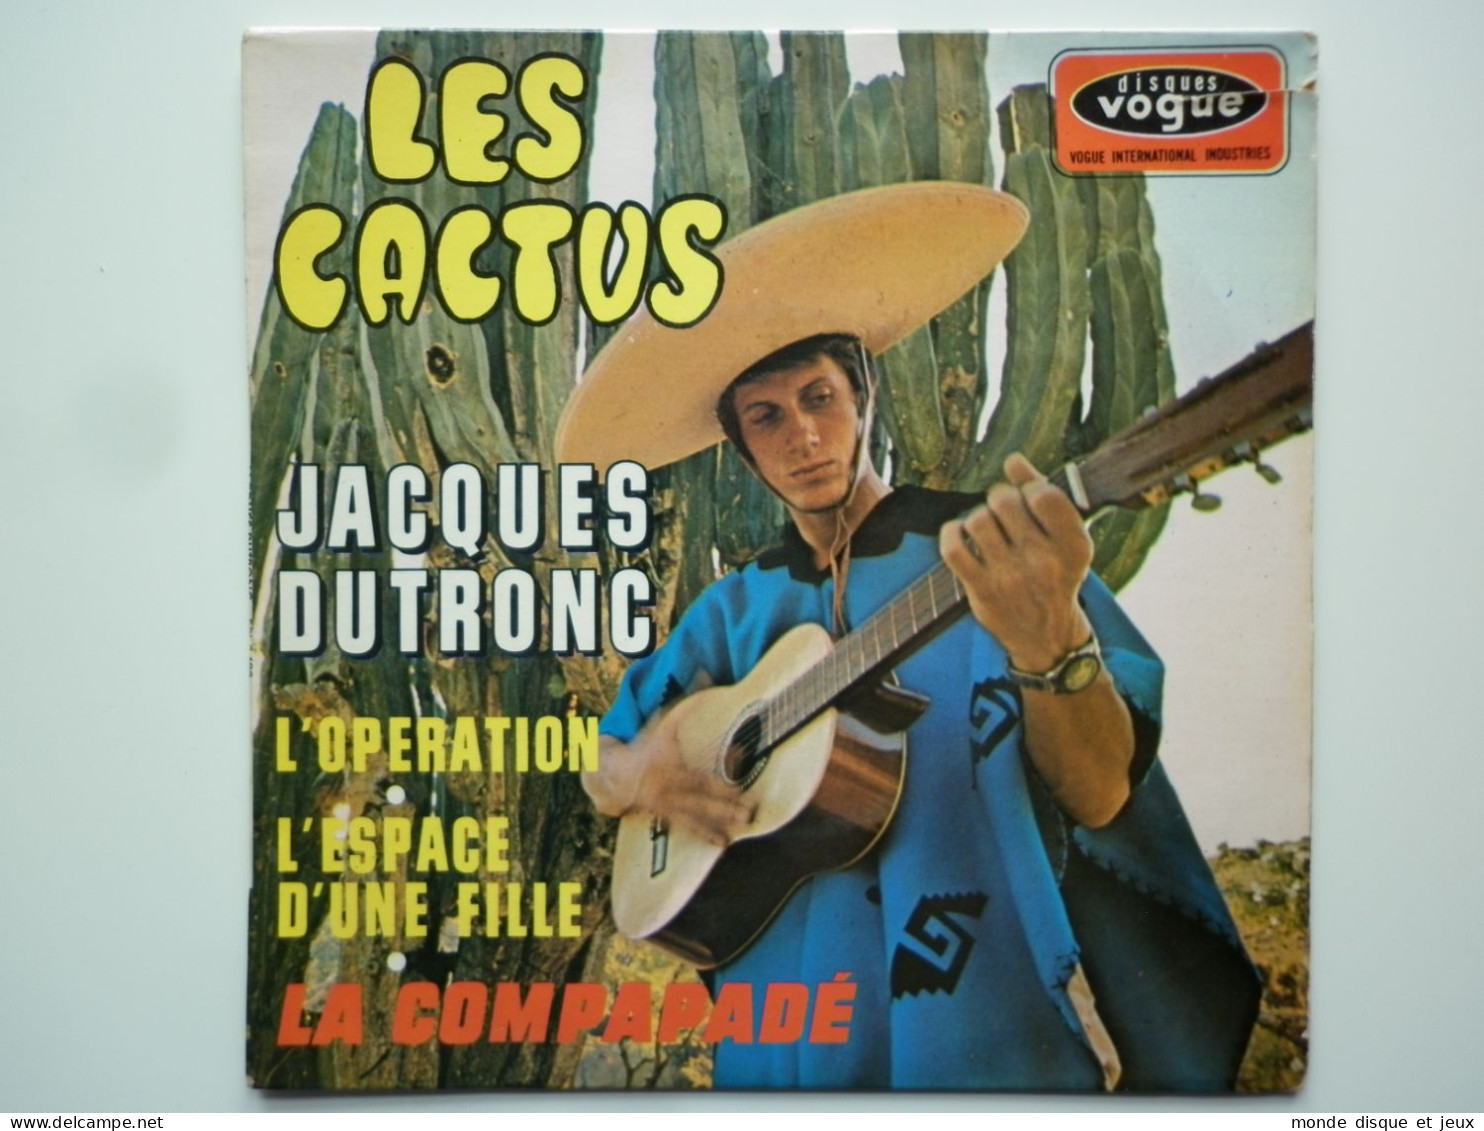 Jacques Dutronc 45Tours EP Vinyle Les Cactus - 45 Toeren - Maxi-Single